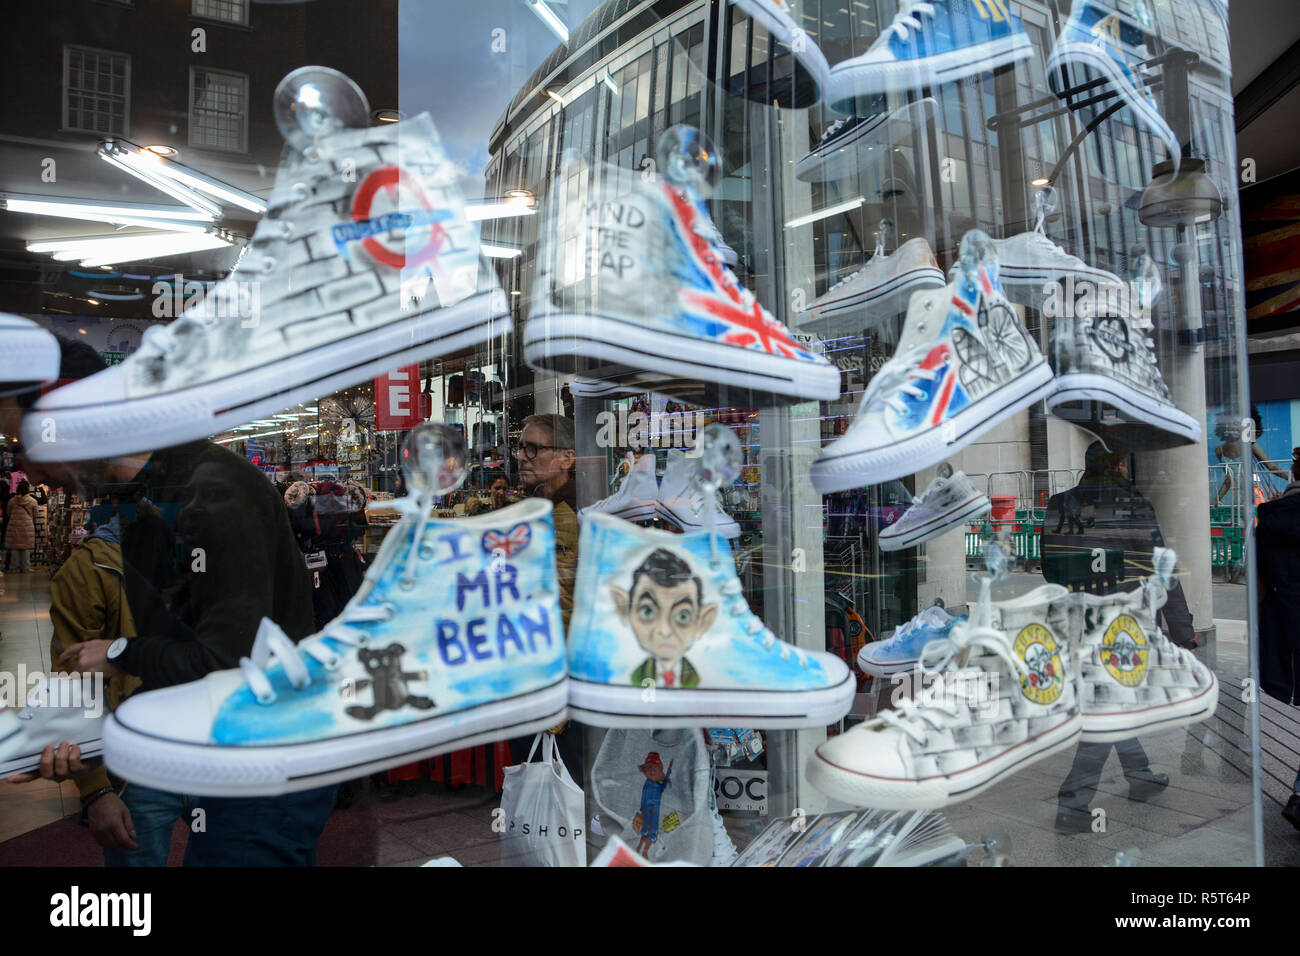 Chaussures converse de Mr Bean dans un magasin de chaussures, Oxford Street, London, UK Banque D'Images